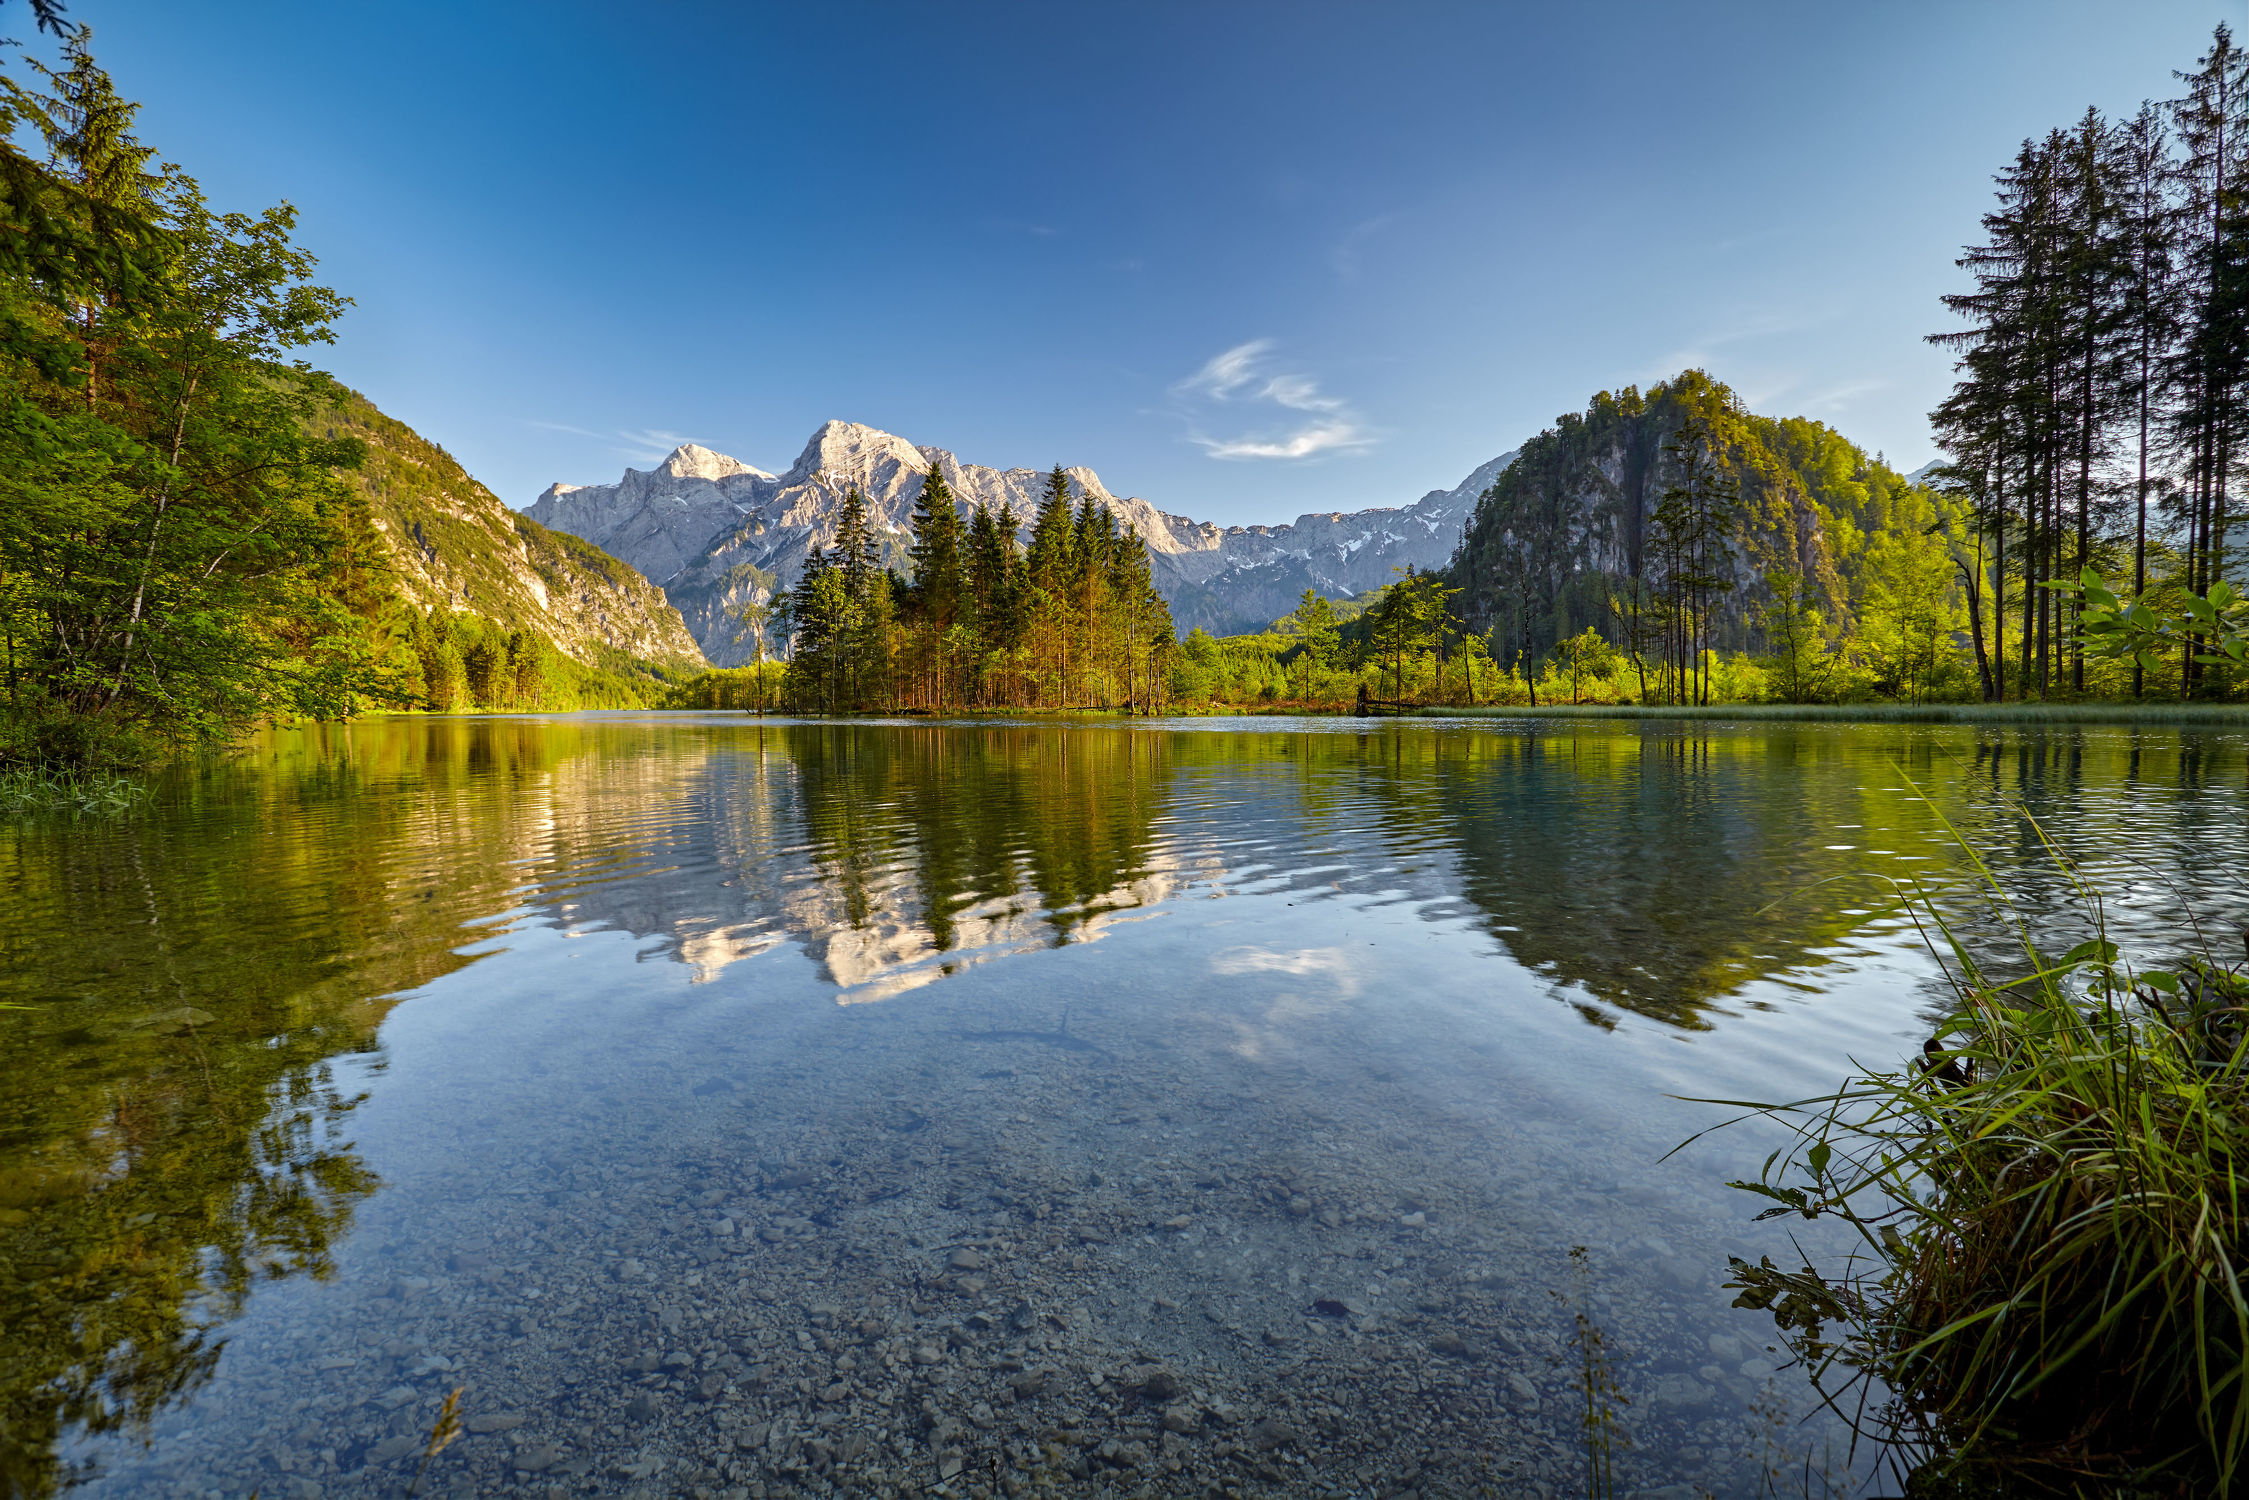 Bild mit Natur, Wasser, Berge, Urlaub, Österreich, Wald, Landschaft, Bergsee, See, Spiegelung, Reise, Wandern, Salzkammergut, Almtal, Almsee